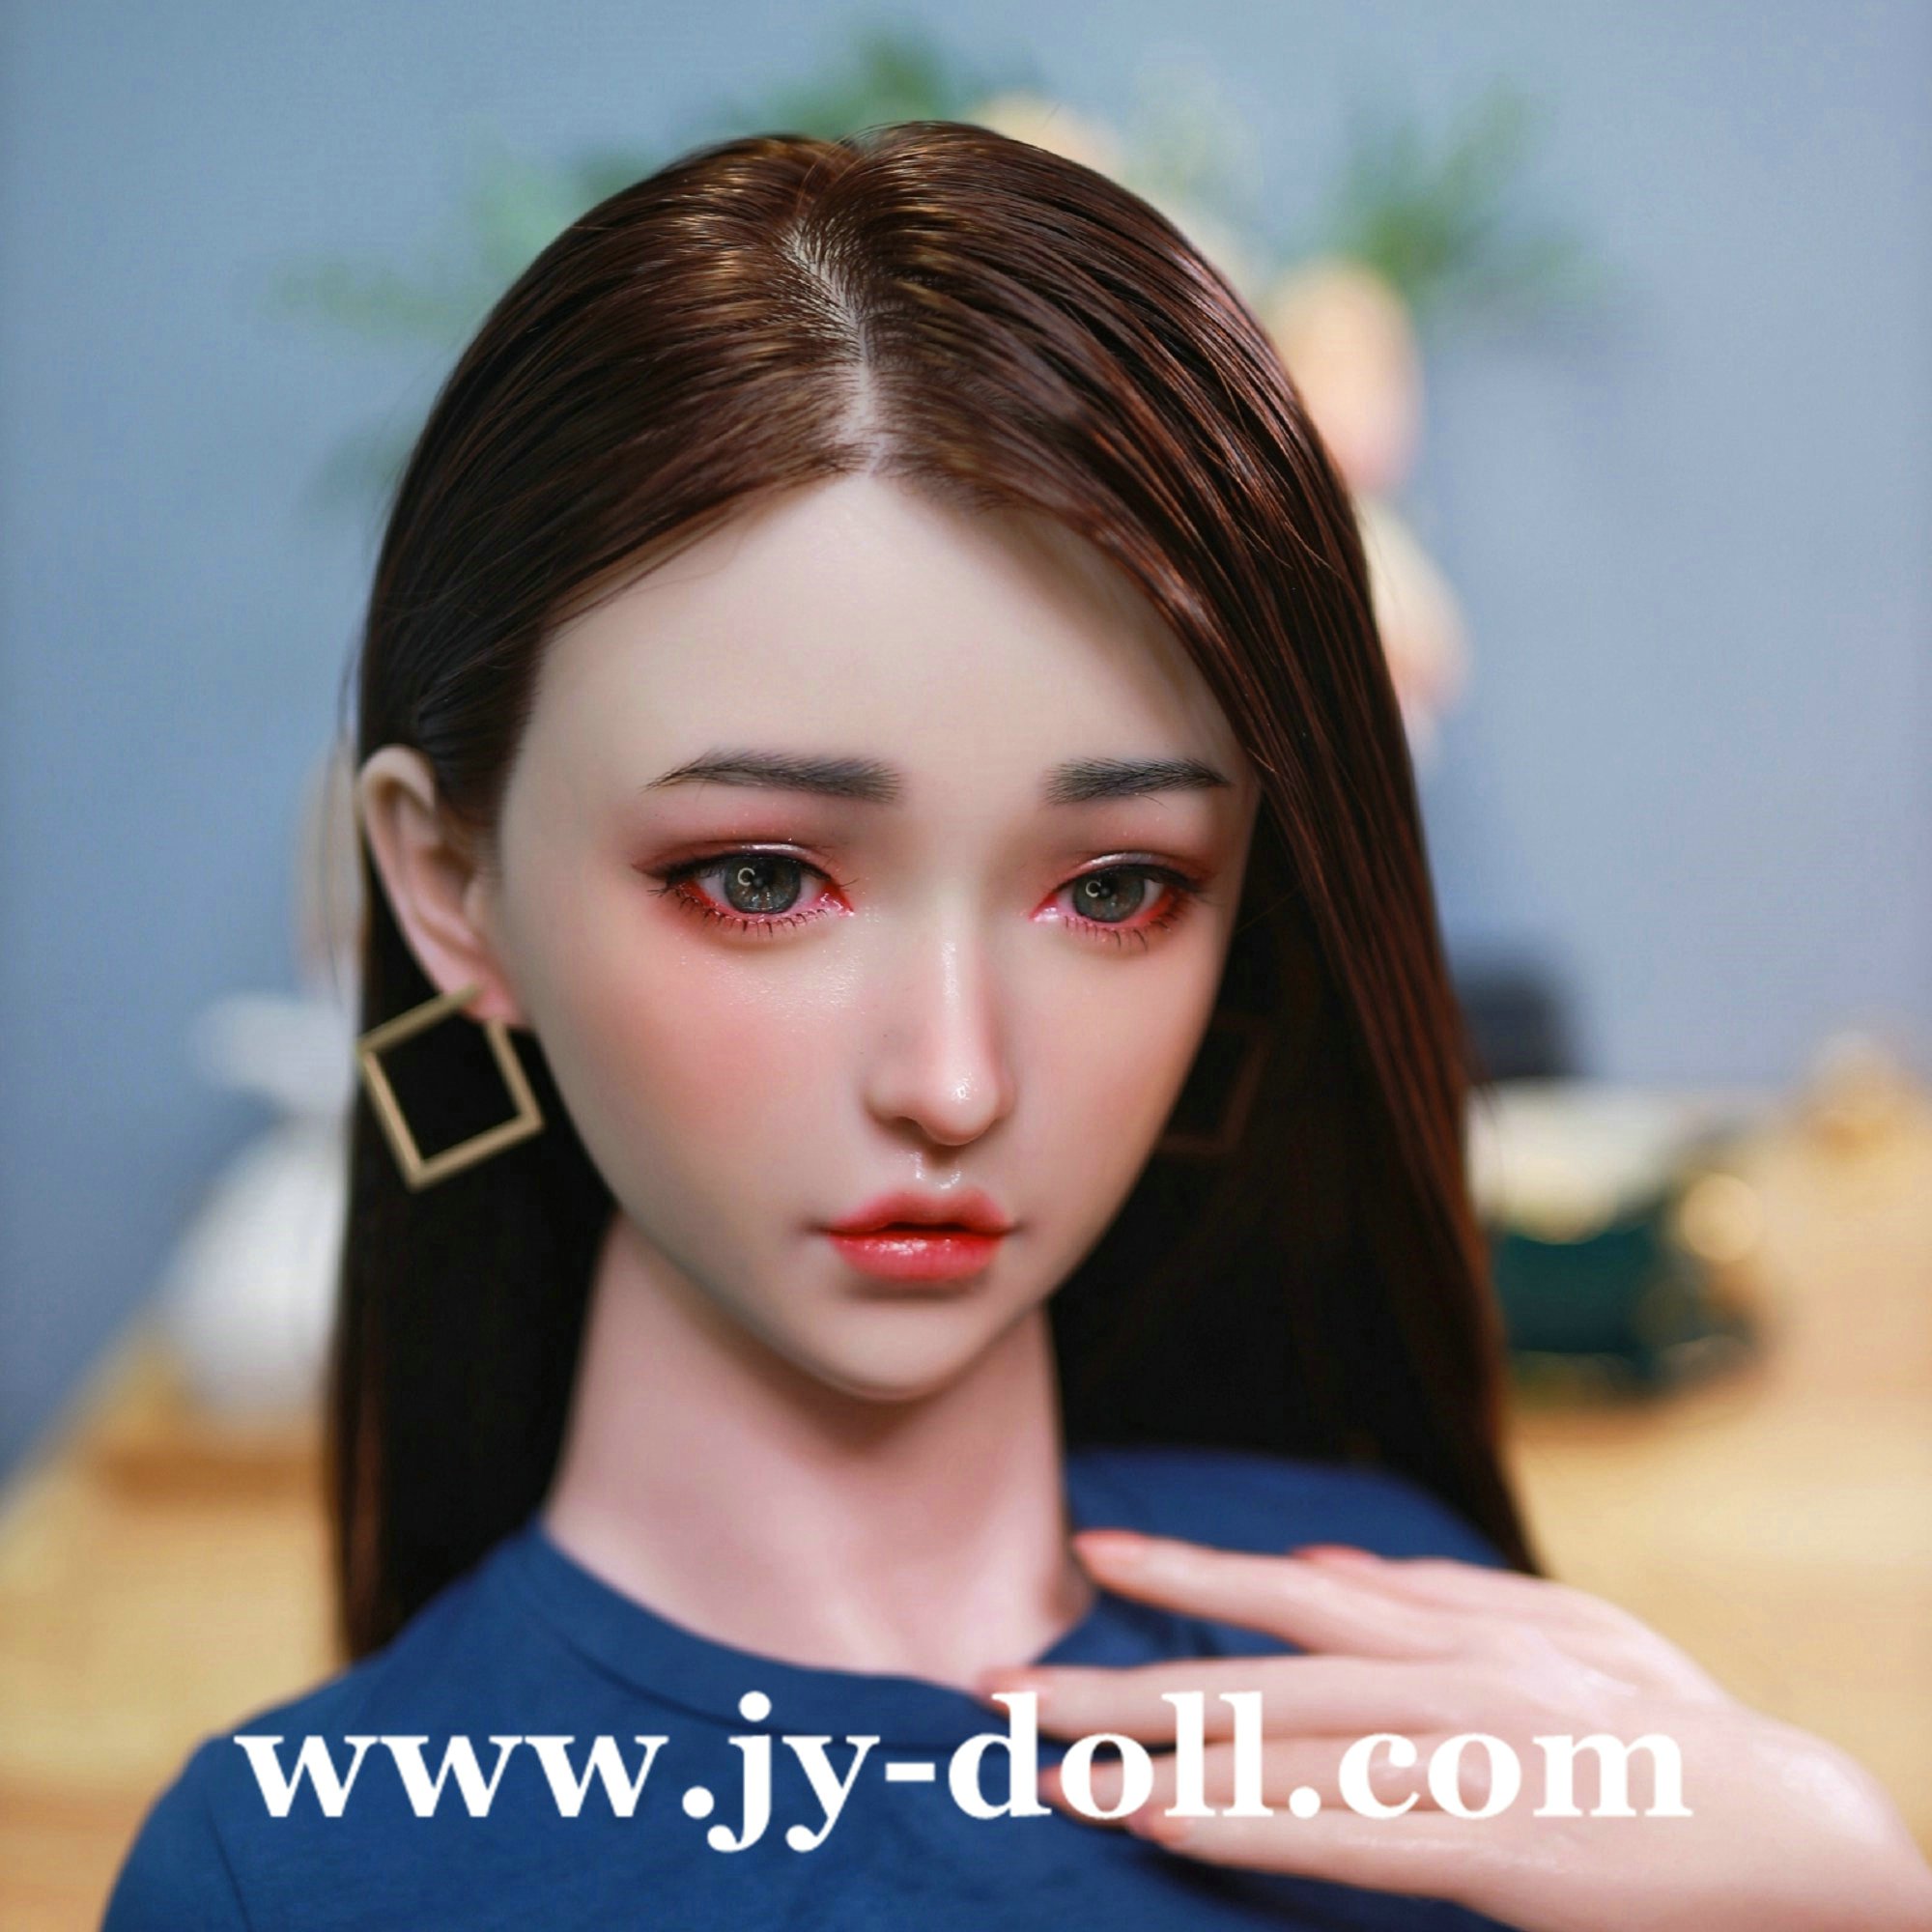 Jy Doll 157cm Realistic Silicone Sex Doll Joanna [jydoll 157cm Full Silicone] 1 990 00 Jy Doll